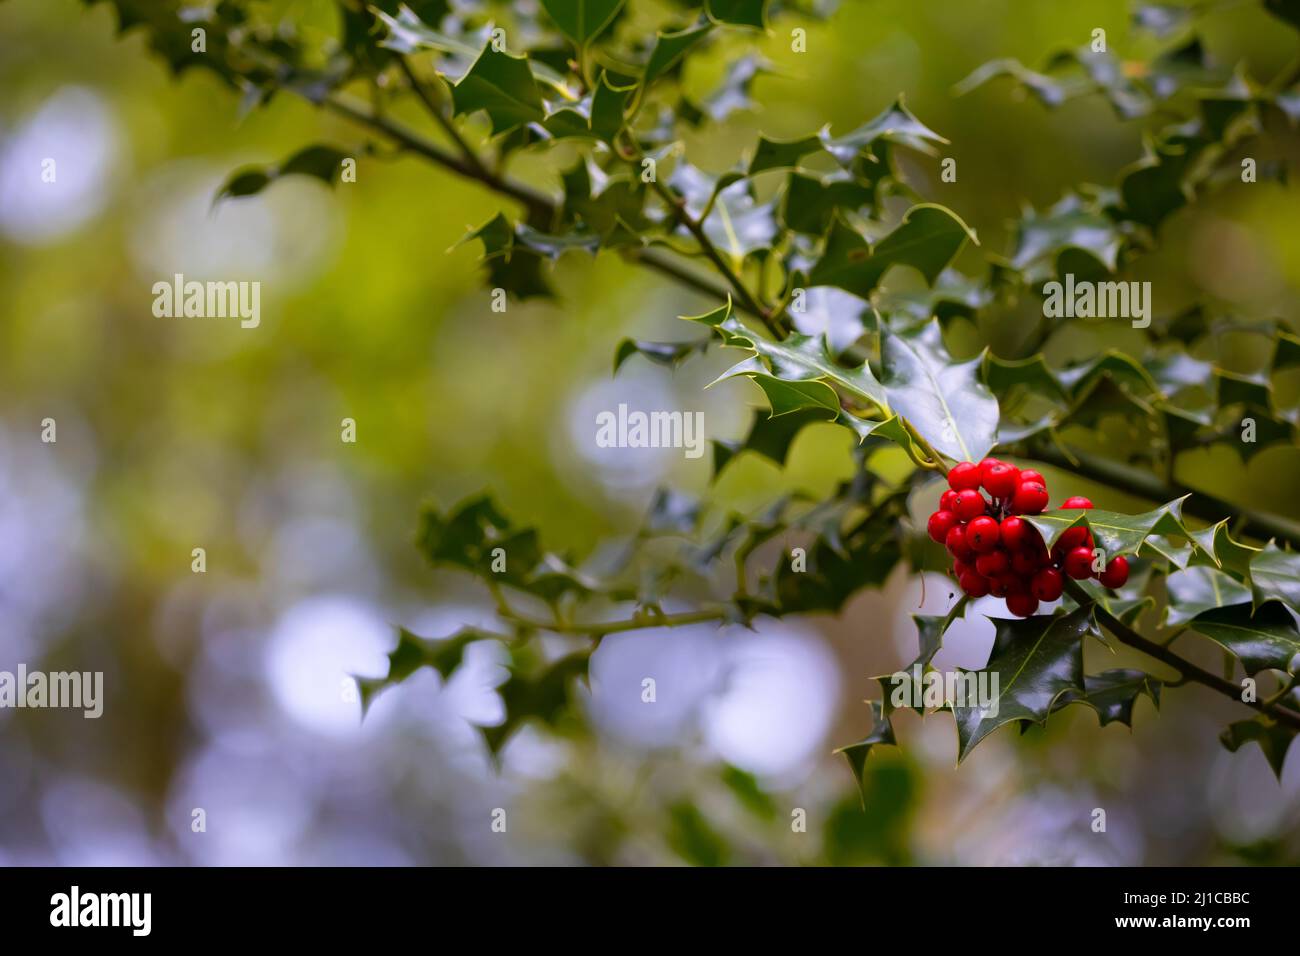 Wunderschöne rote Beeren, die vor grünem Hintergrund an einer Stachelpflanze befestigt sind. Stockfoto